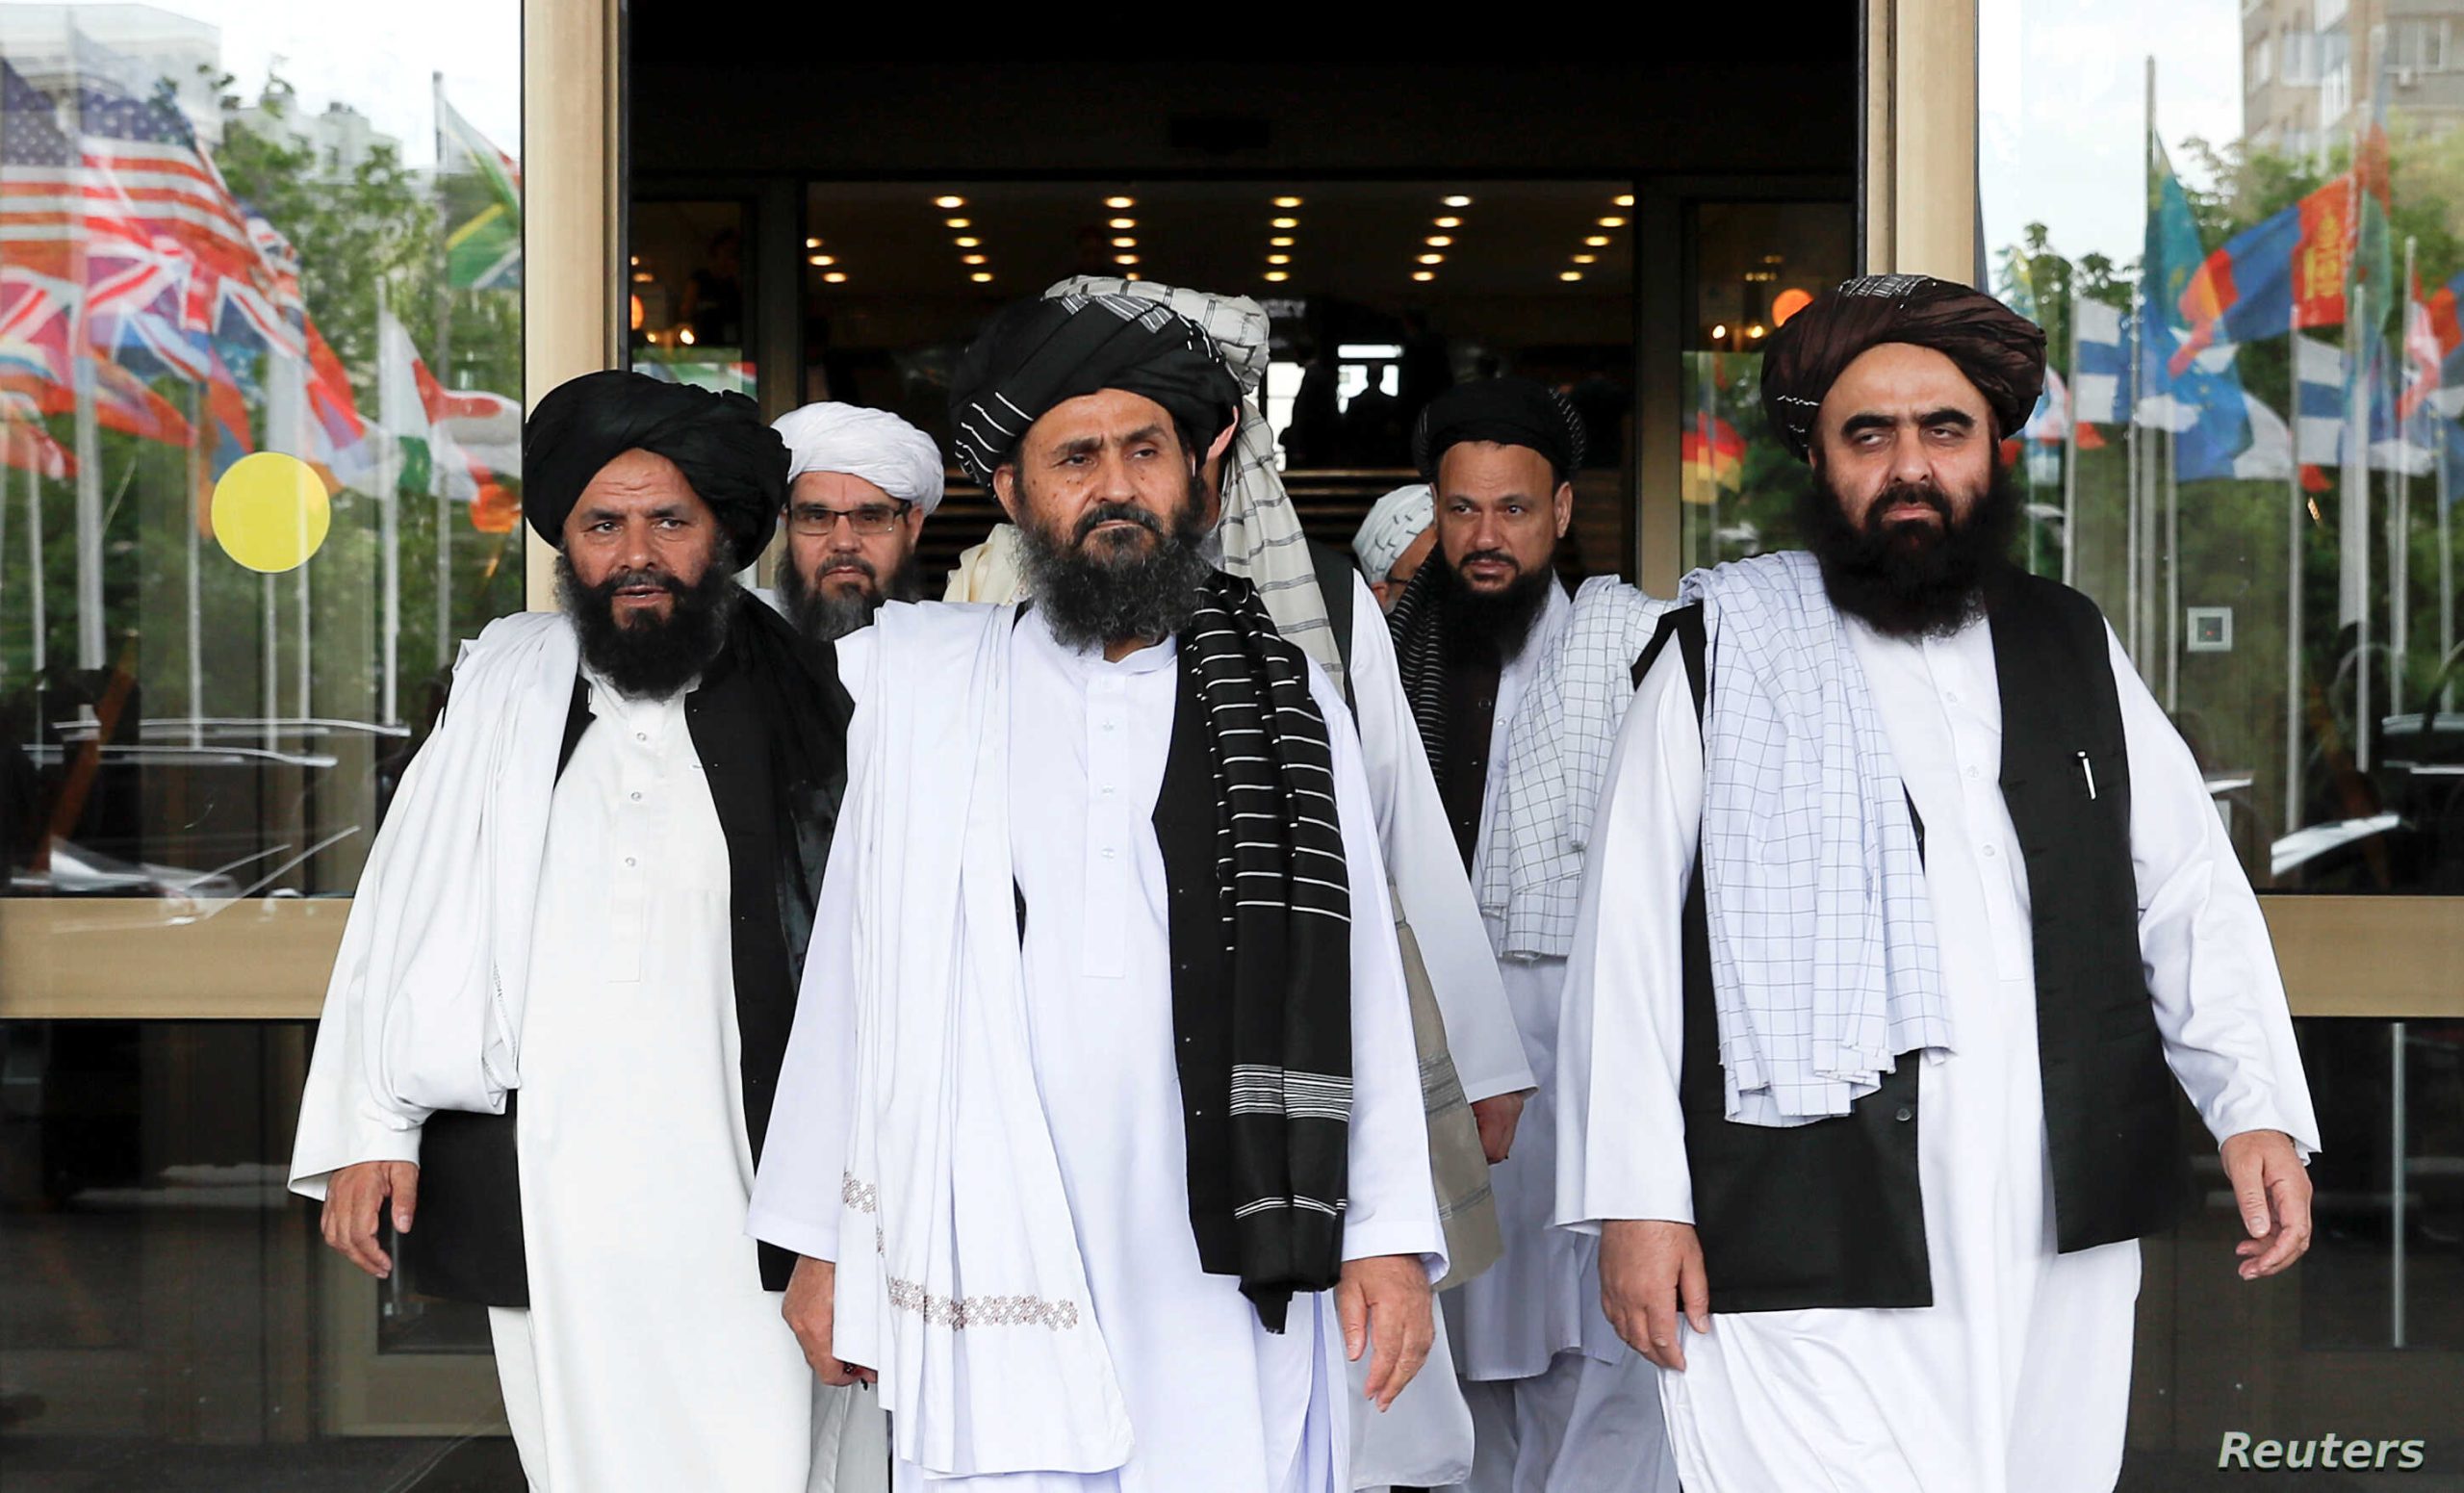 ΥΠΕΞ: «Χαιρετίζουμε την έναρξη των ειρηνευτικών διαπραγματεύσεων μεταξύ της κυβέρνησης του Αφγανιστάν και των Ταλιμπάν»